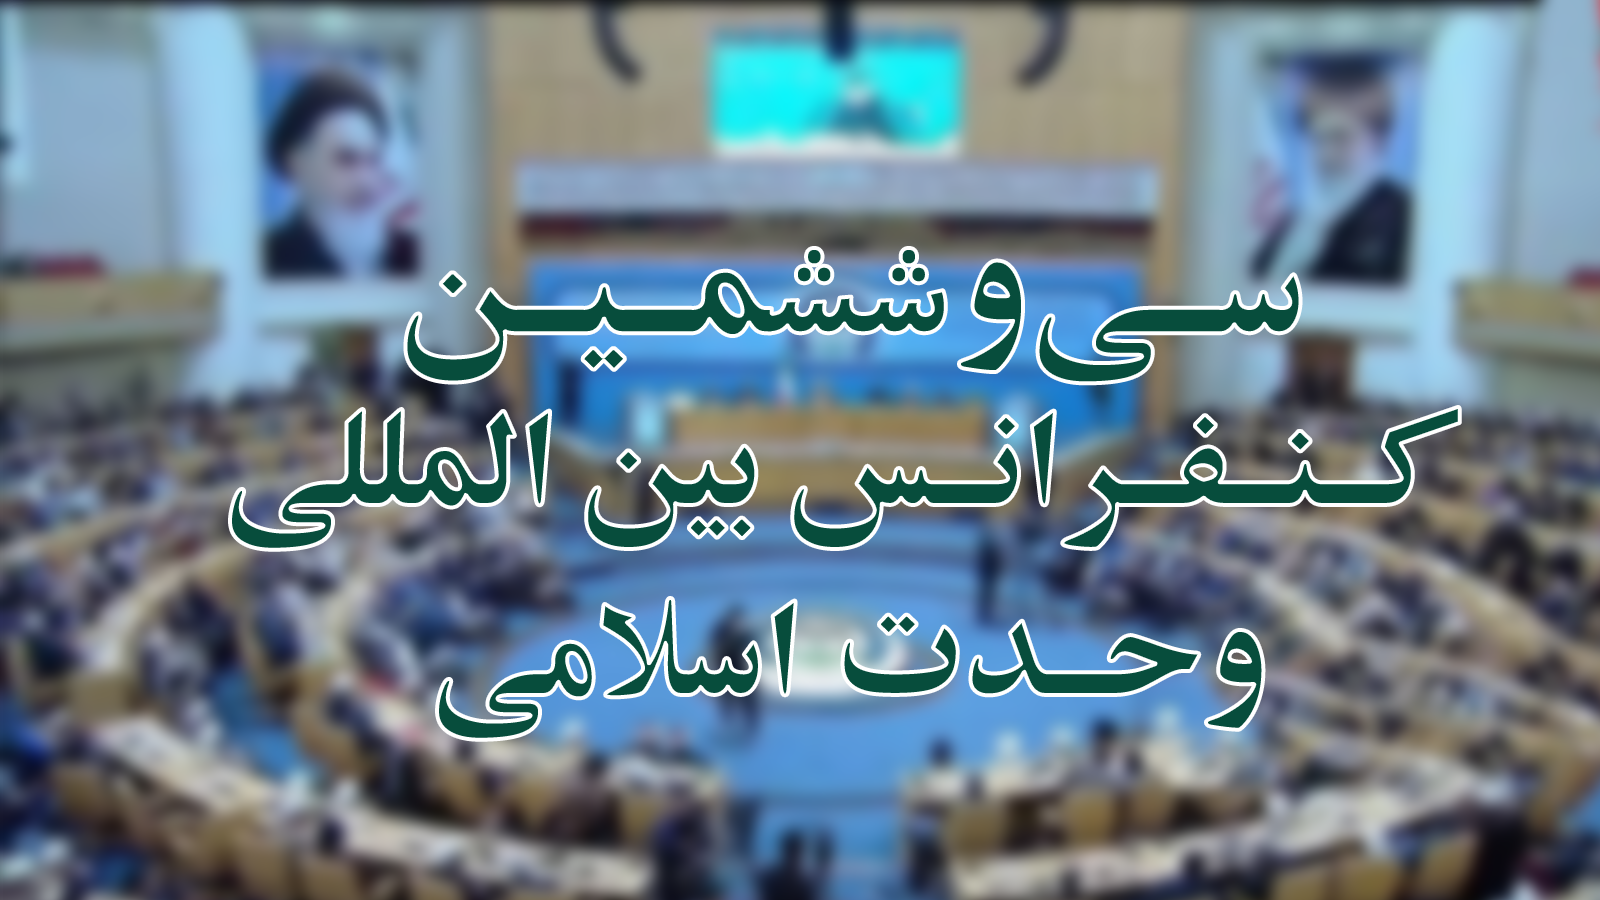 بكلمة الرئيس الايراني بدأت فعاليات مؤتمر أسبوع الوحدة الإسلامية في طهران